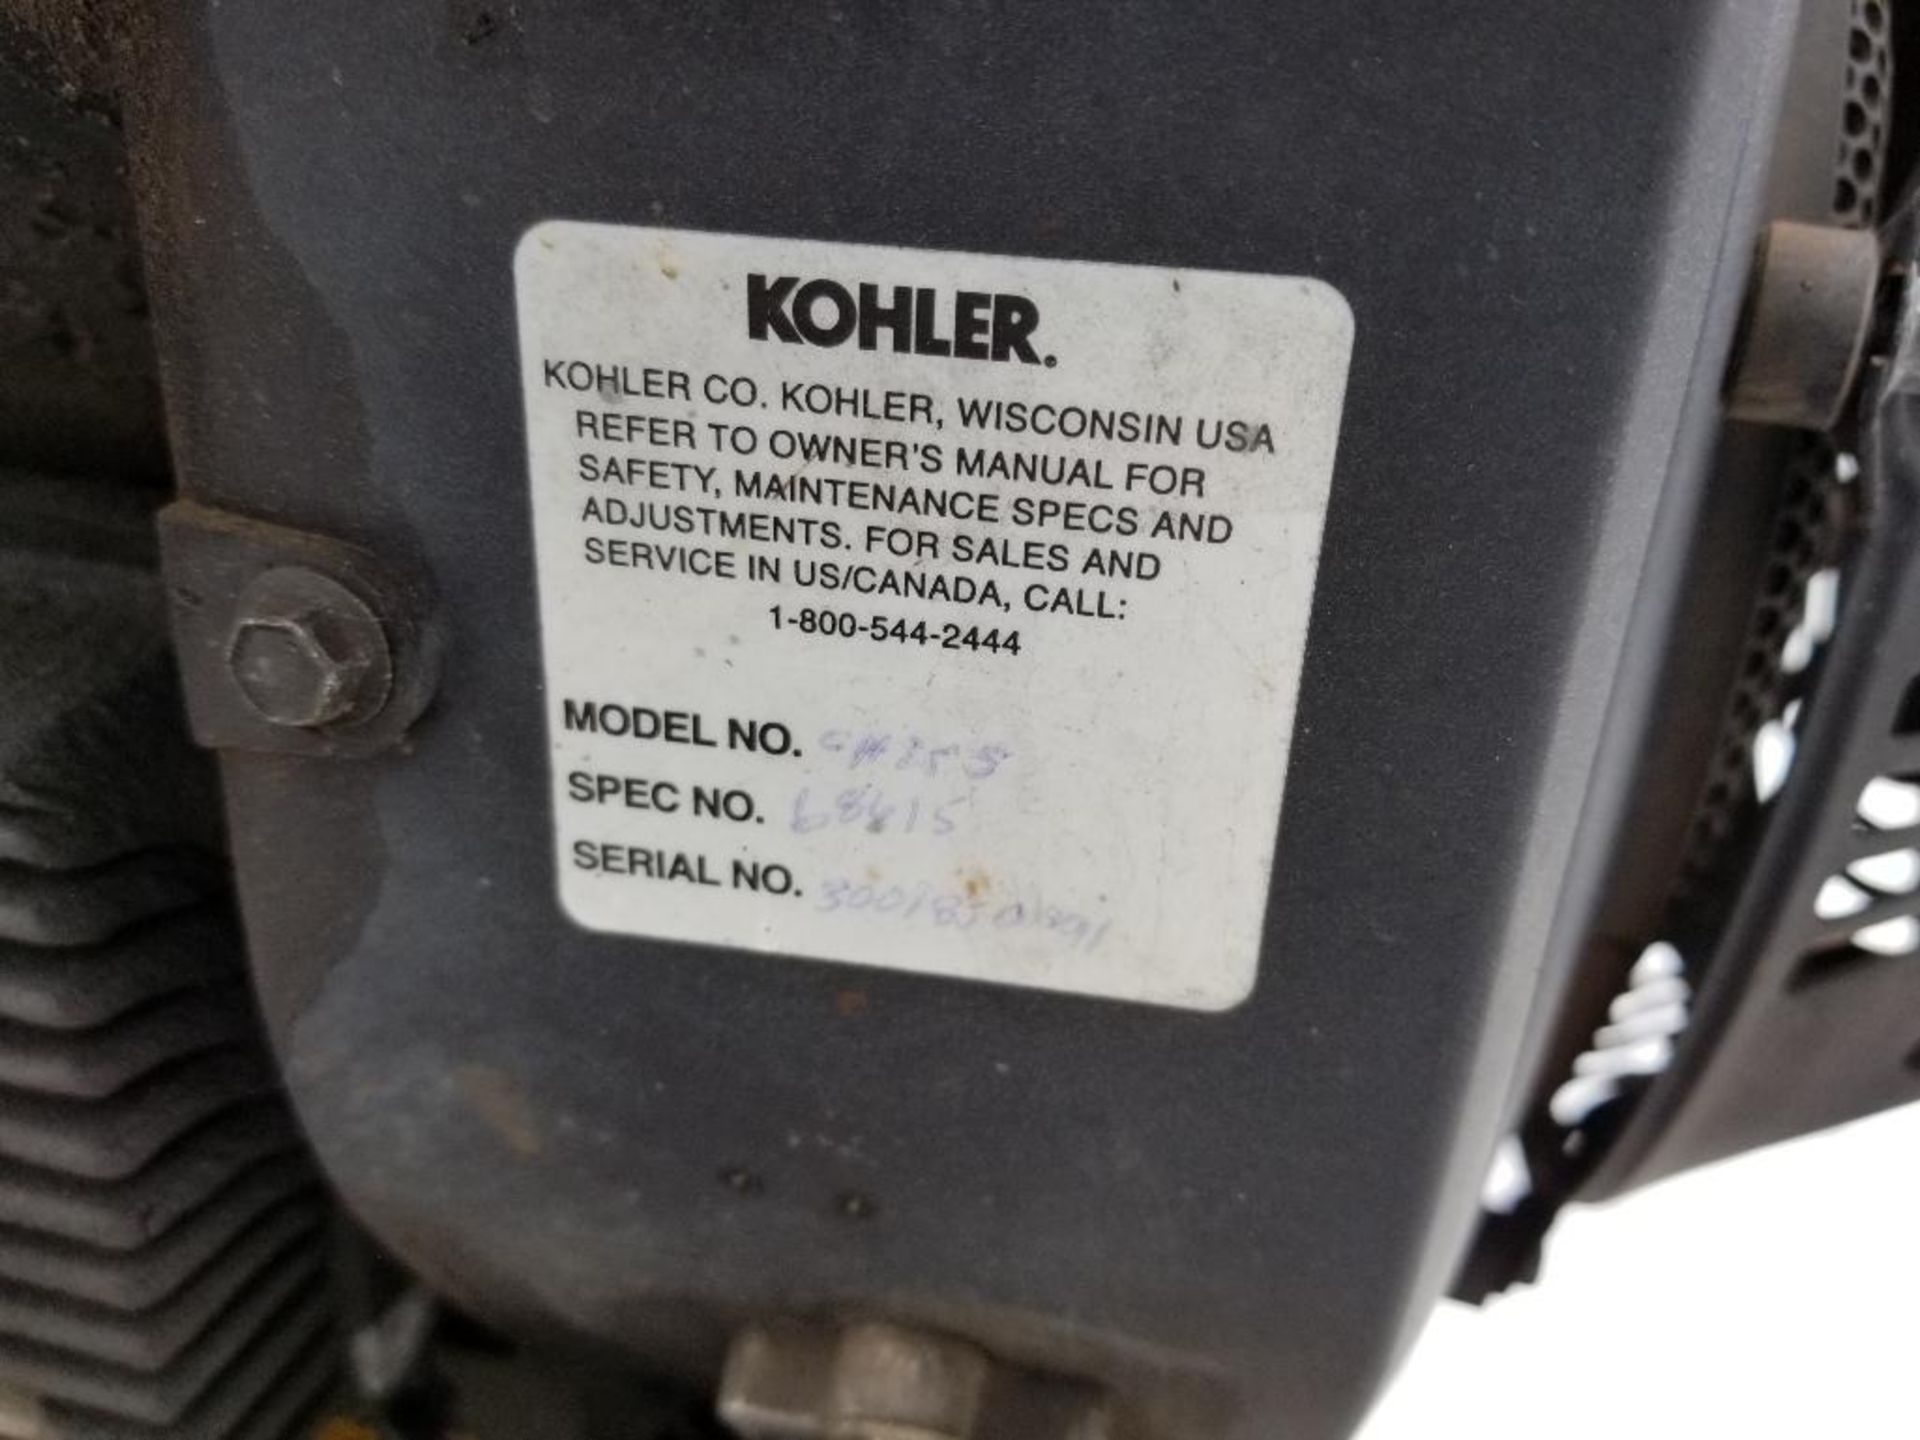 Rayco stump grinder. RG1625 super Jr. Kohler motor. 1320 hours showing on hour meter. - Image 14 of 19